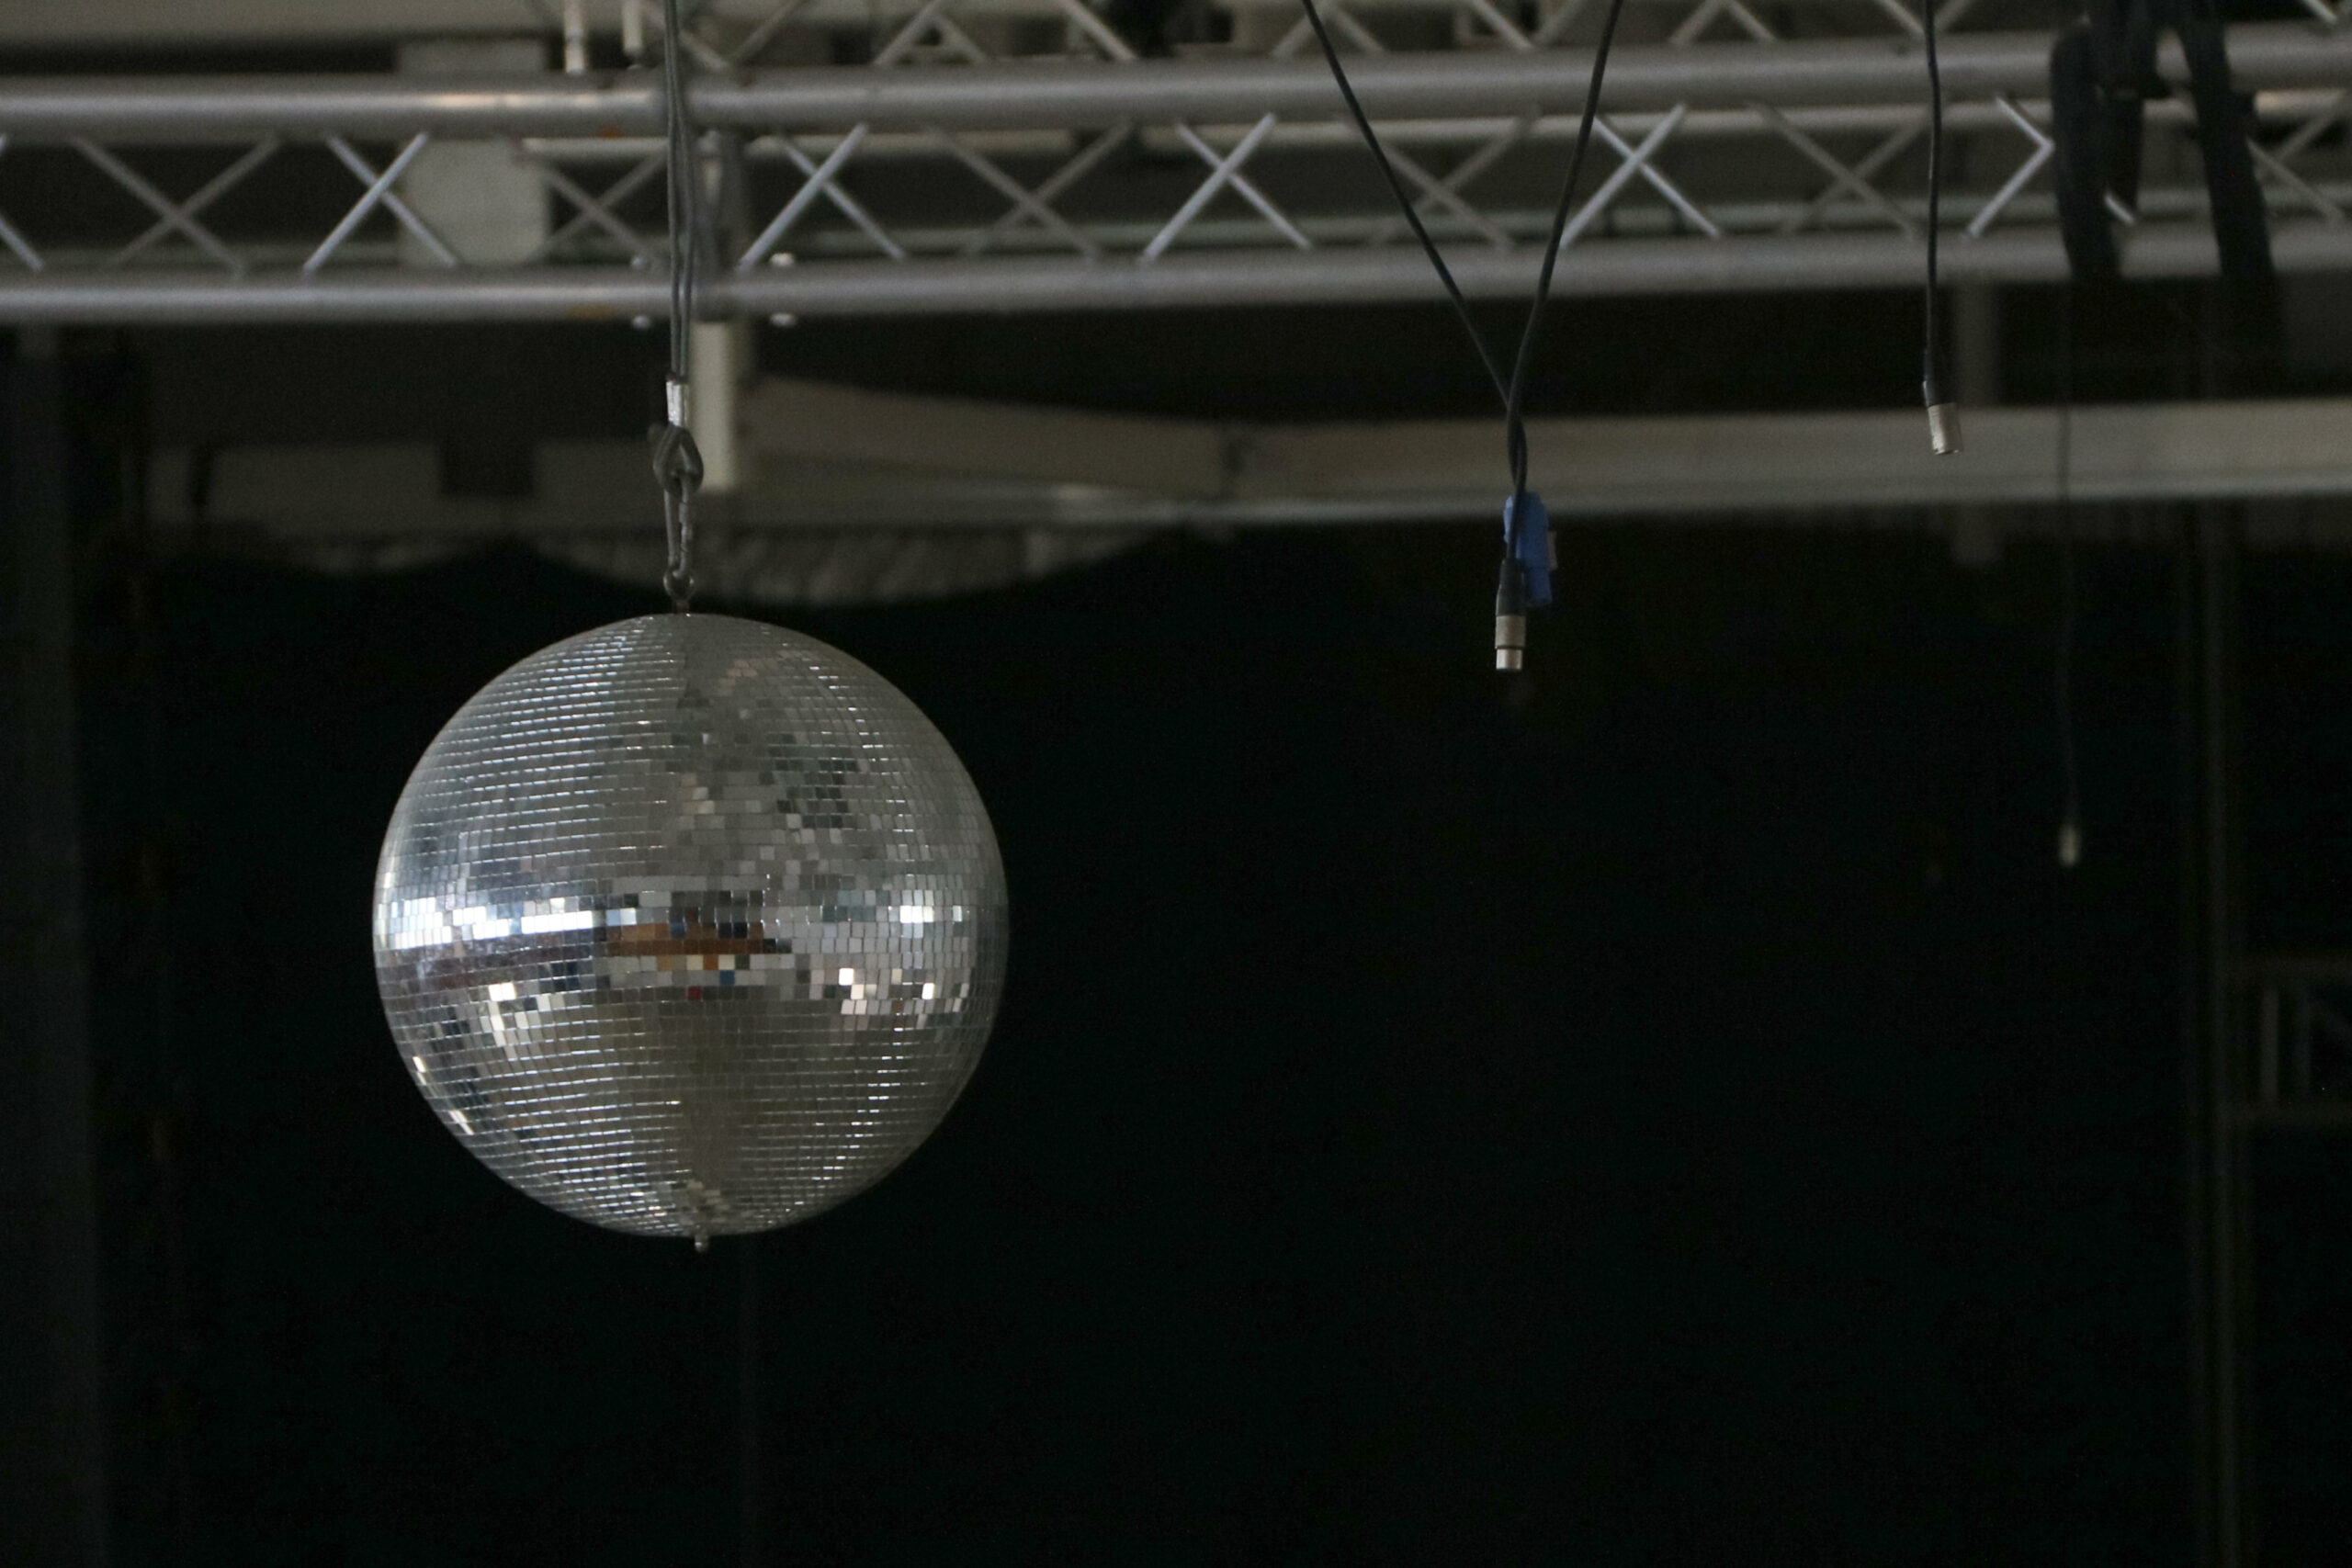 La bola de cristalls d'una discoteca, amb cables desconectats degut al tancament pel confinament. Imatge del 16 de juny del 2020 